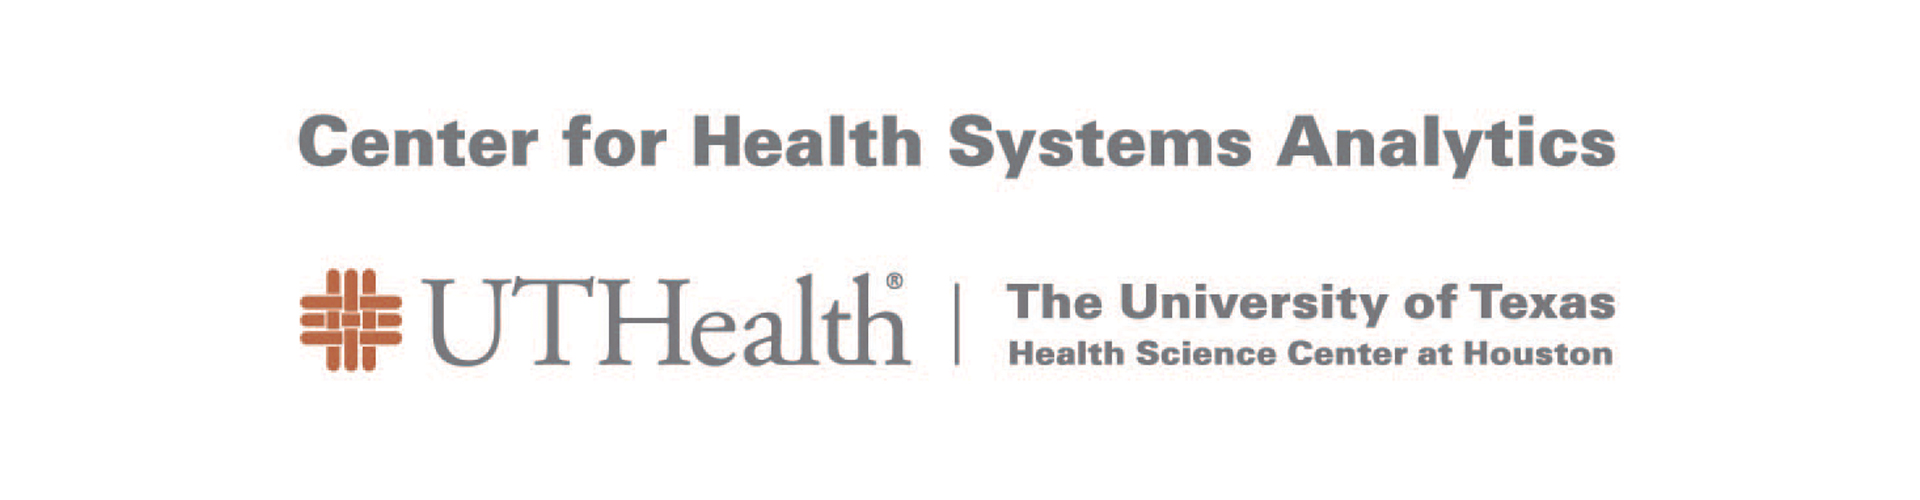 UTHELADY卫生系统分析徽标